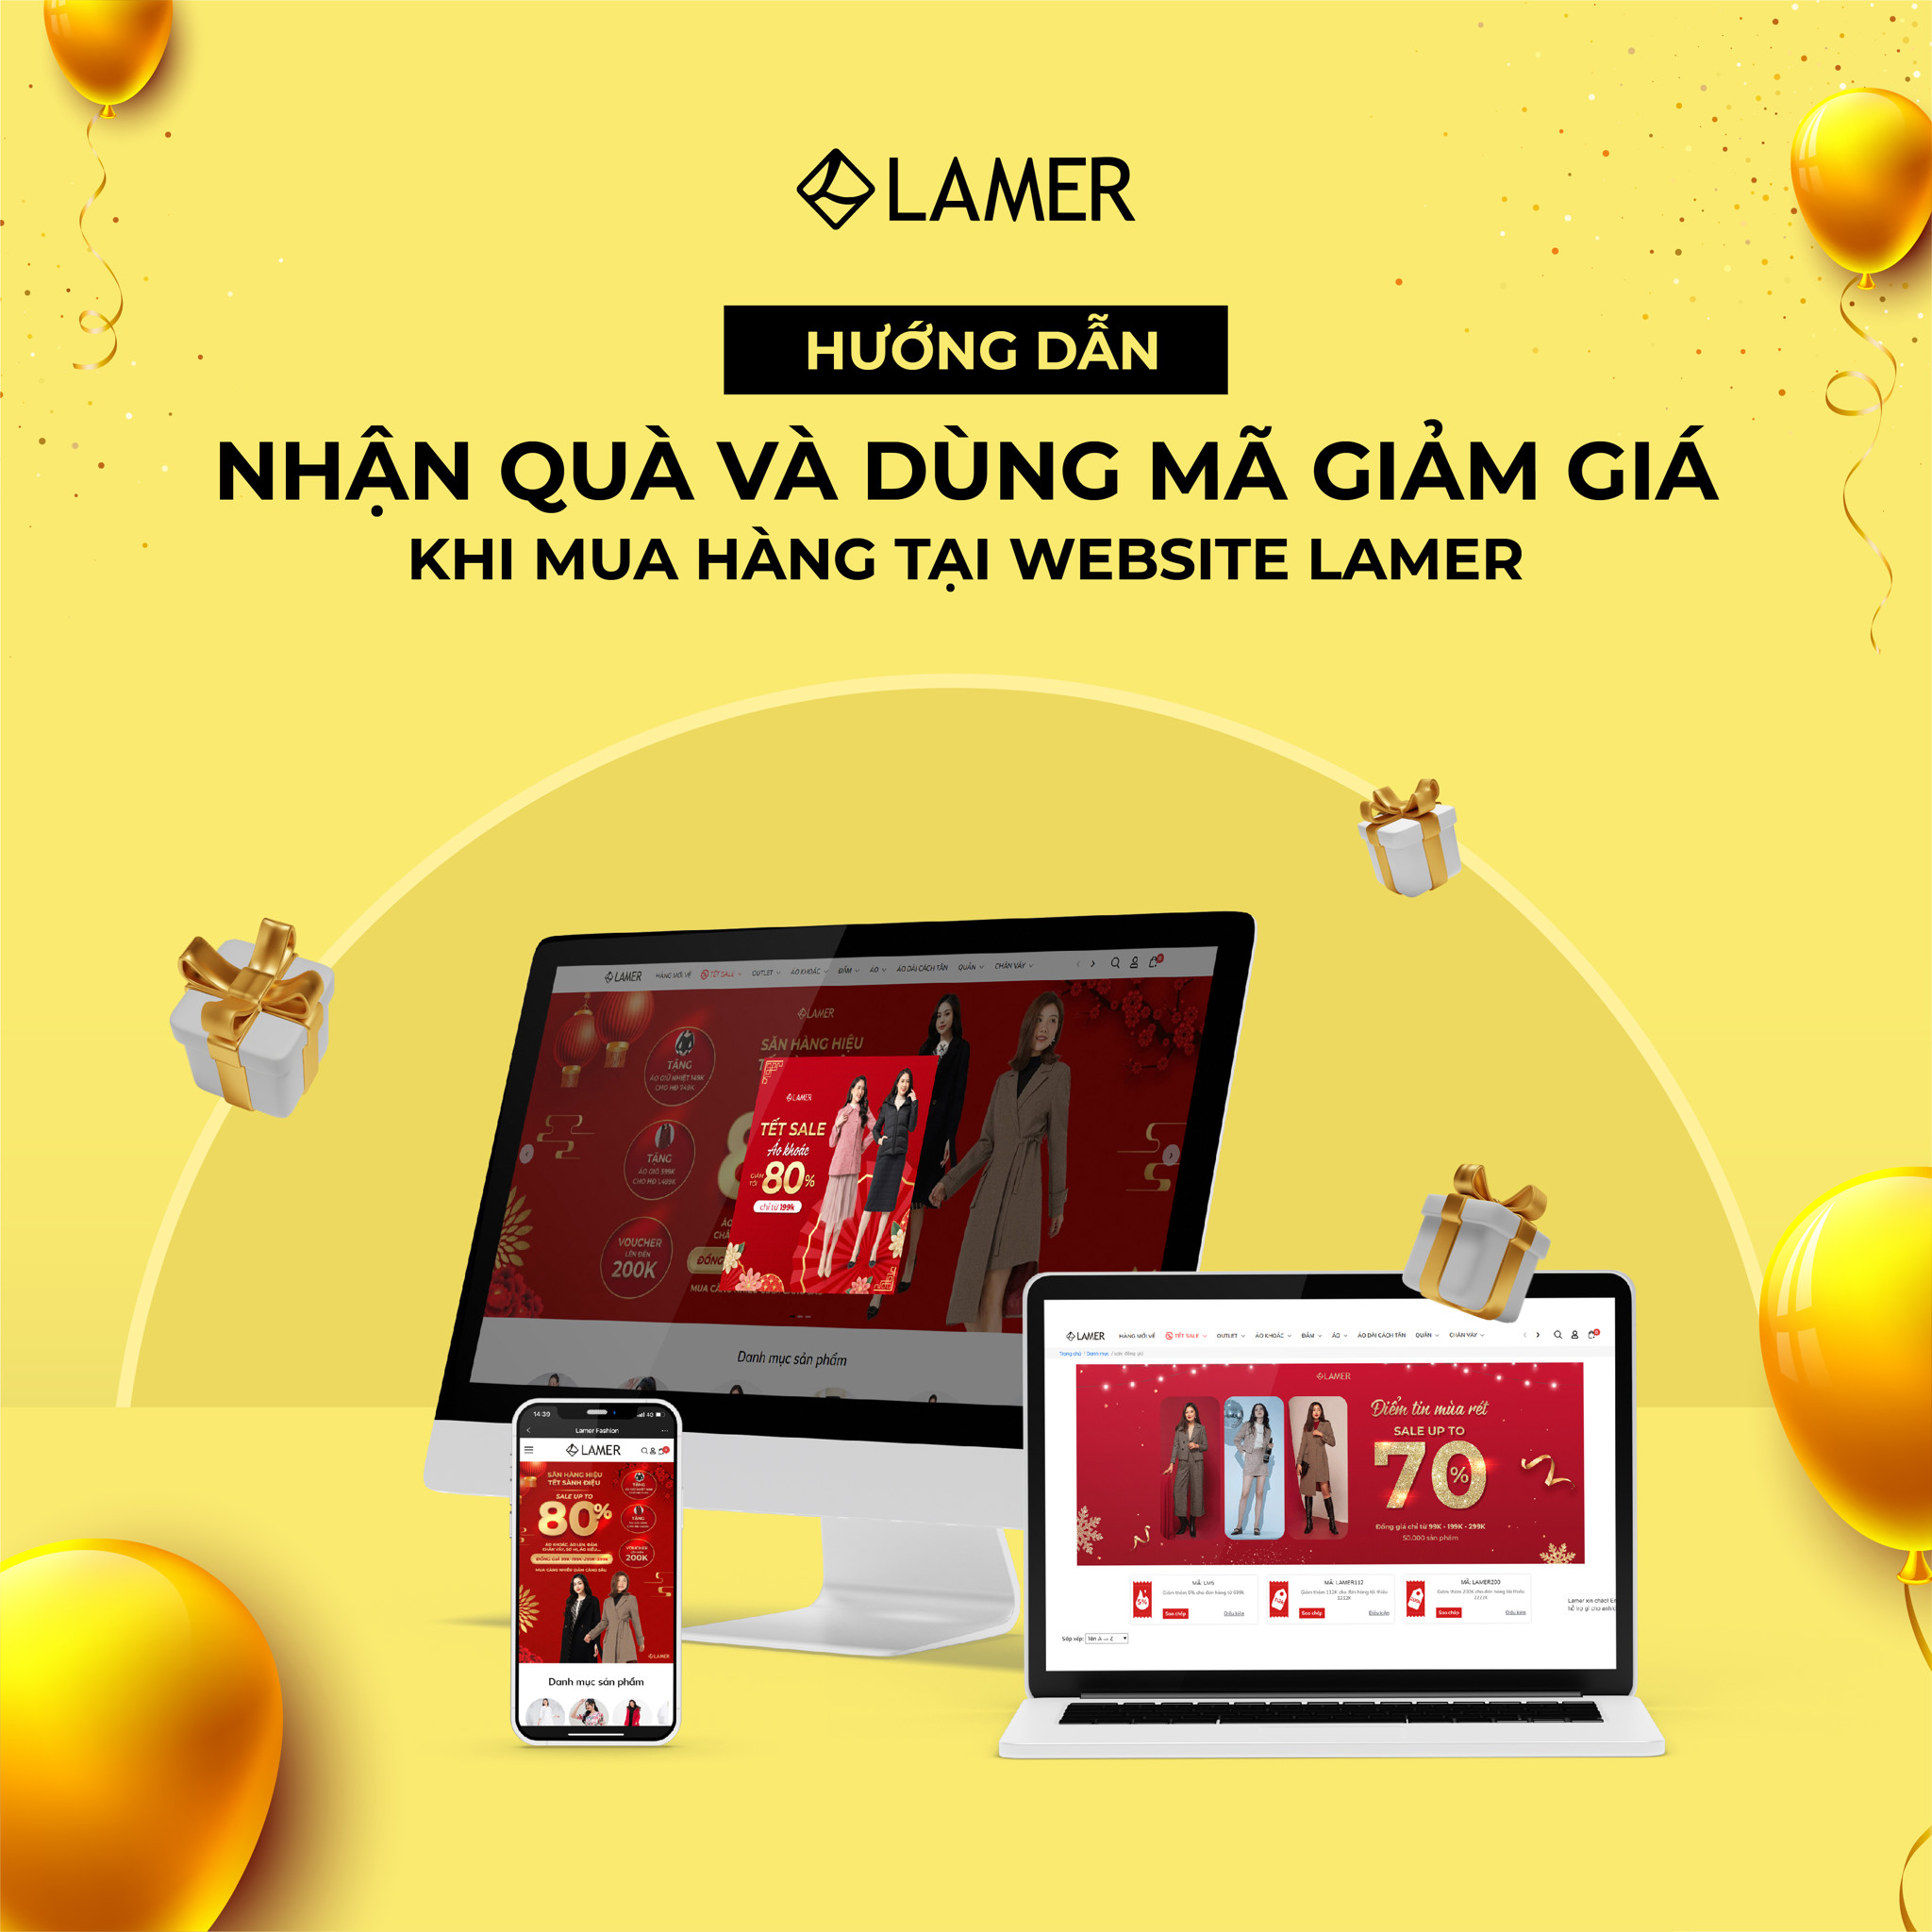 Hướng dẫn nhận quà và dùng mã giảm giá khi mua hàng tại website LAMER